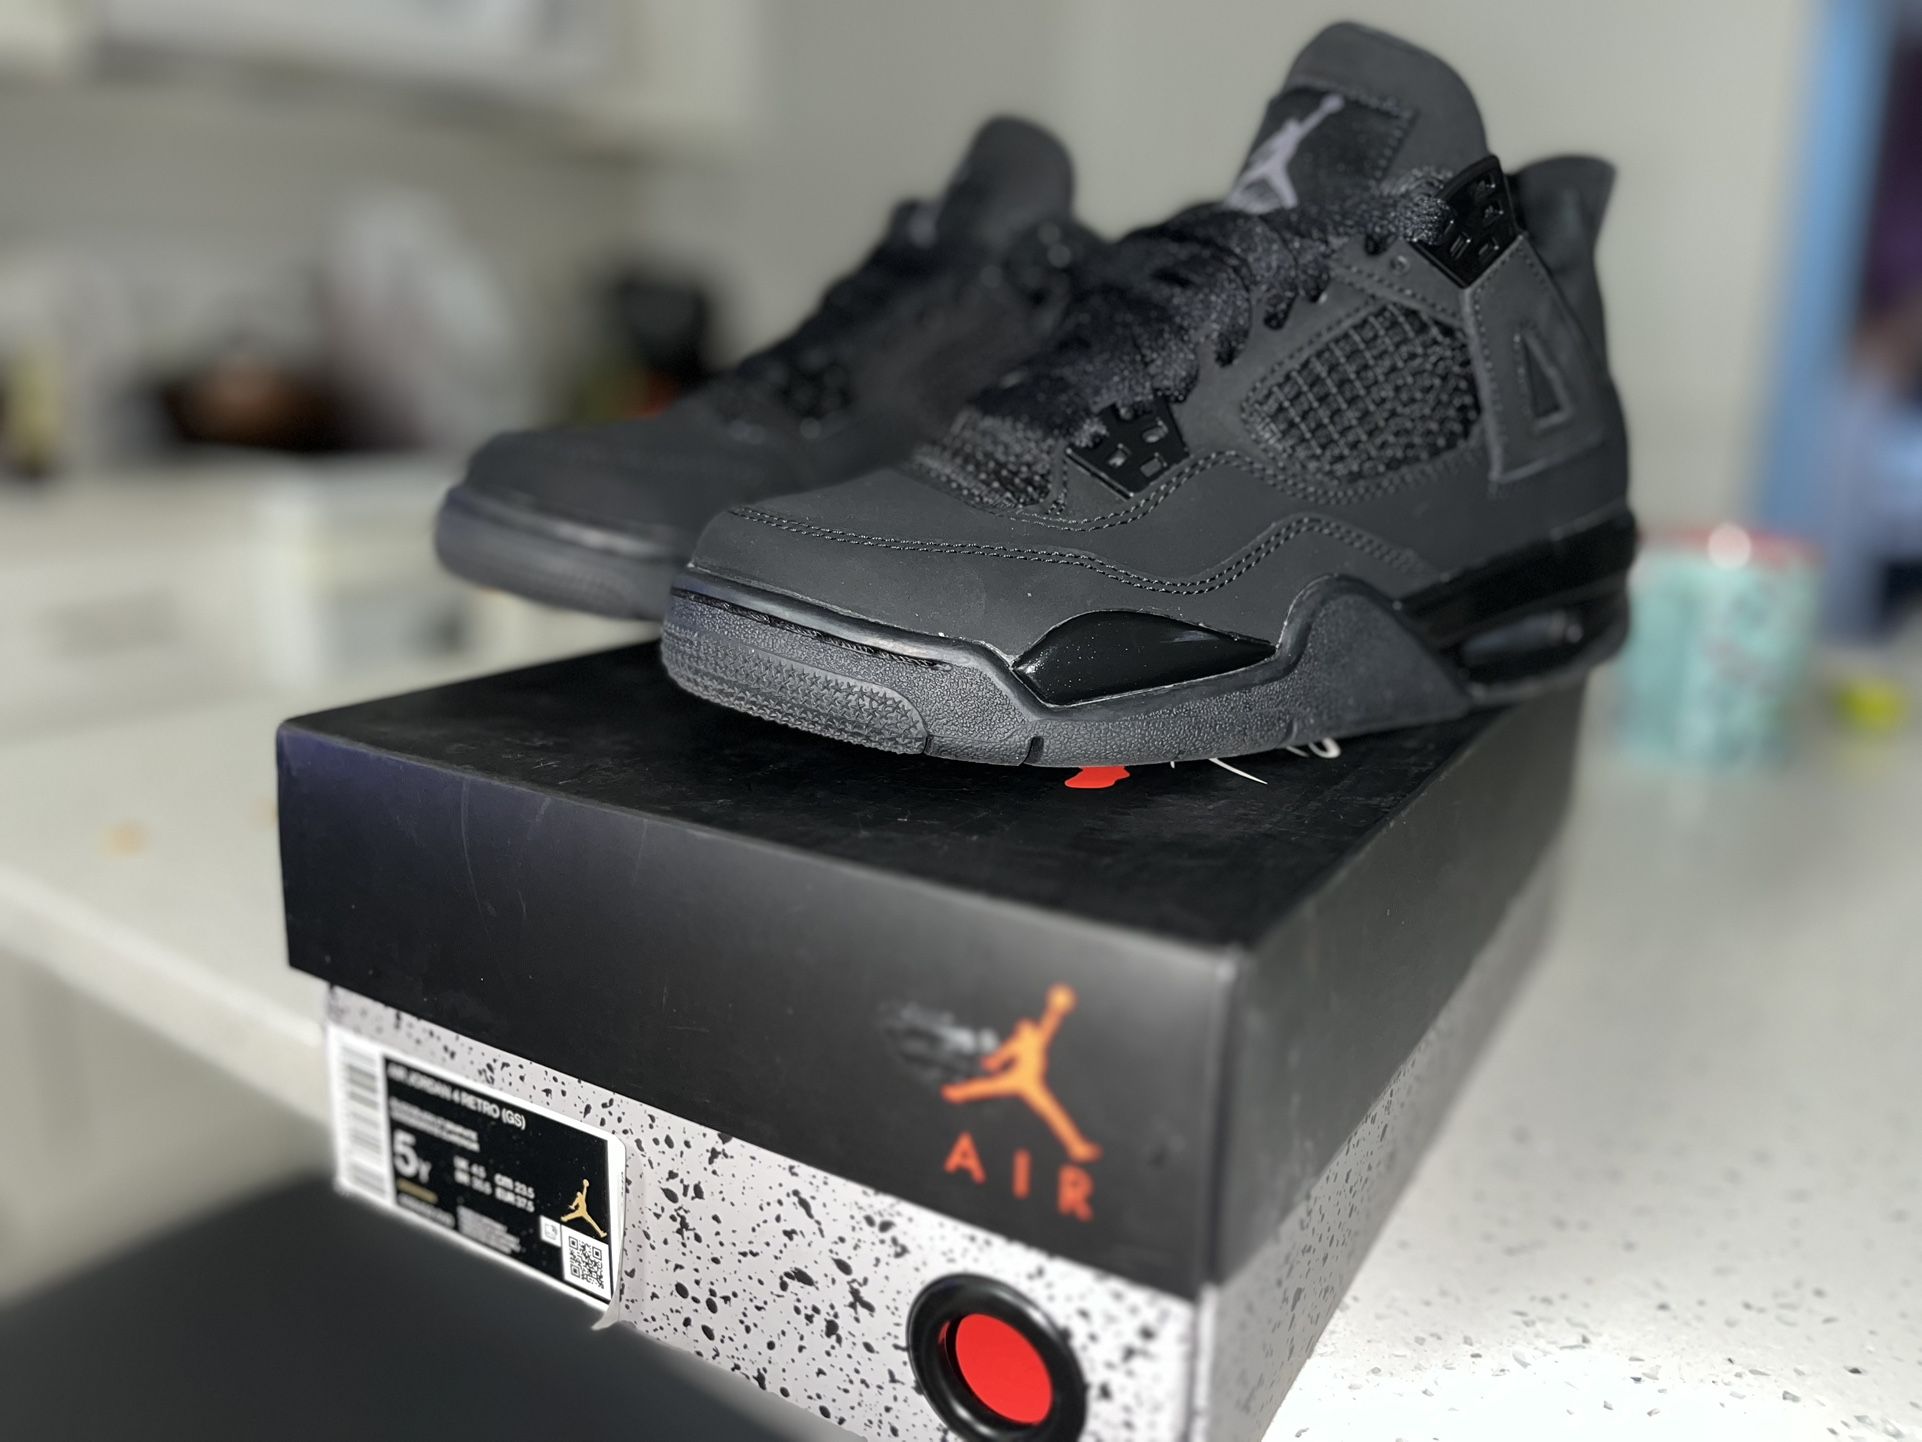 Air Jordan Black Cats 